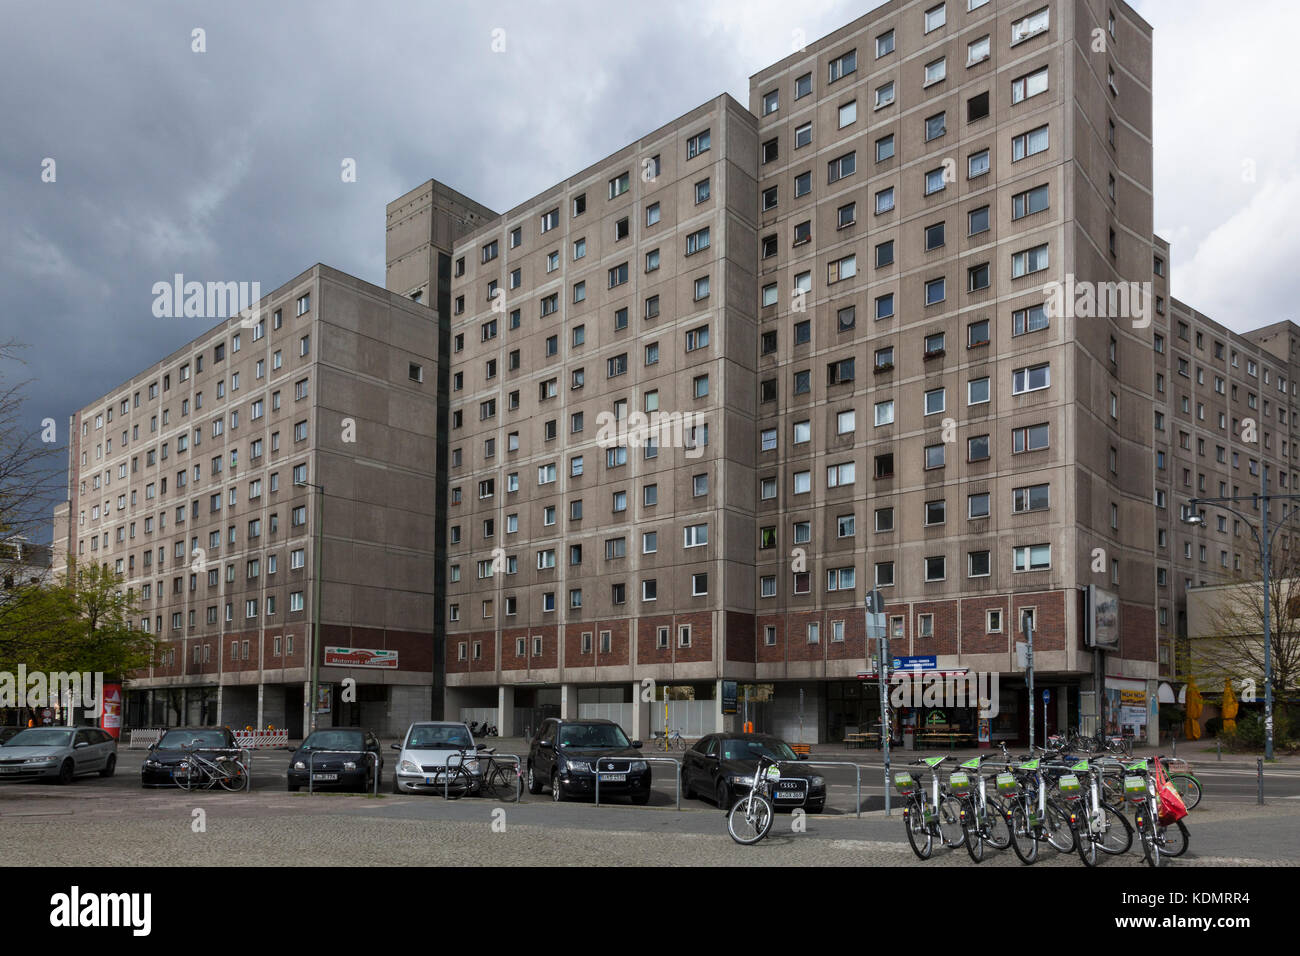 Bloque de viviendas de la posguerra, Berlín, Alemania Foto de stock